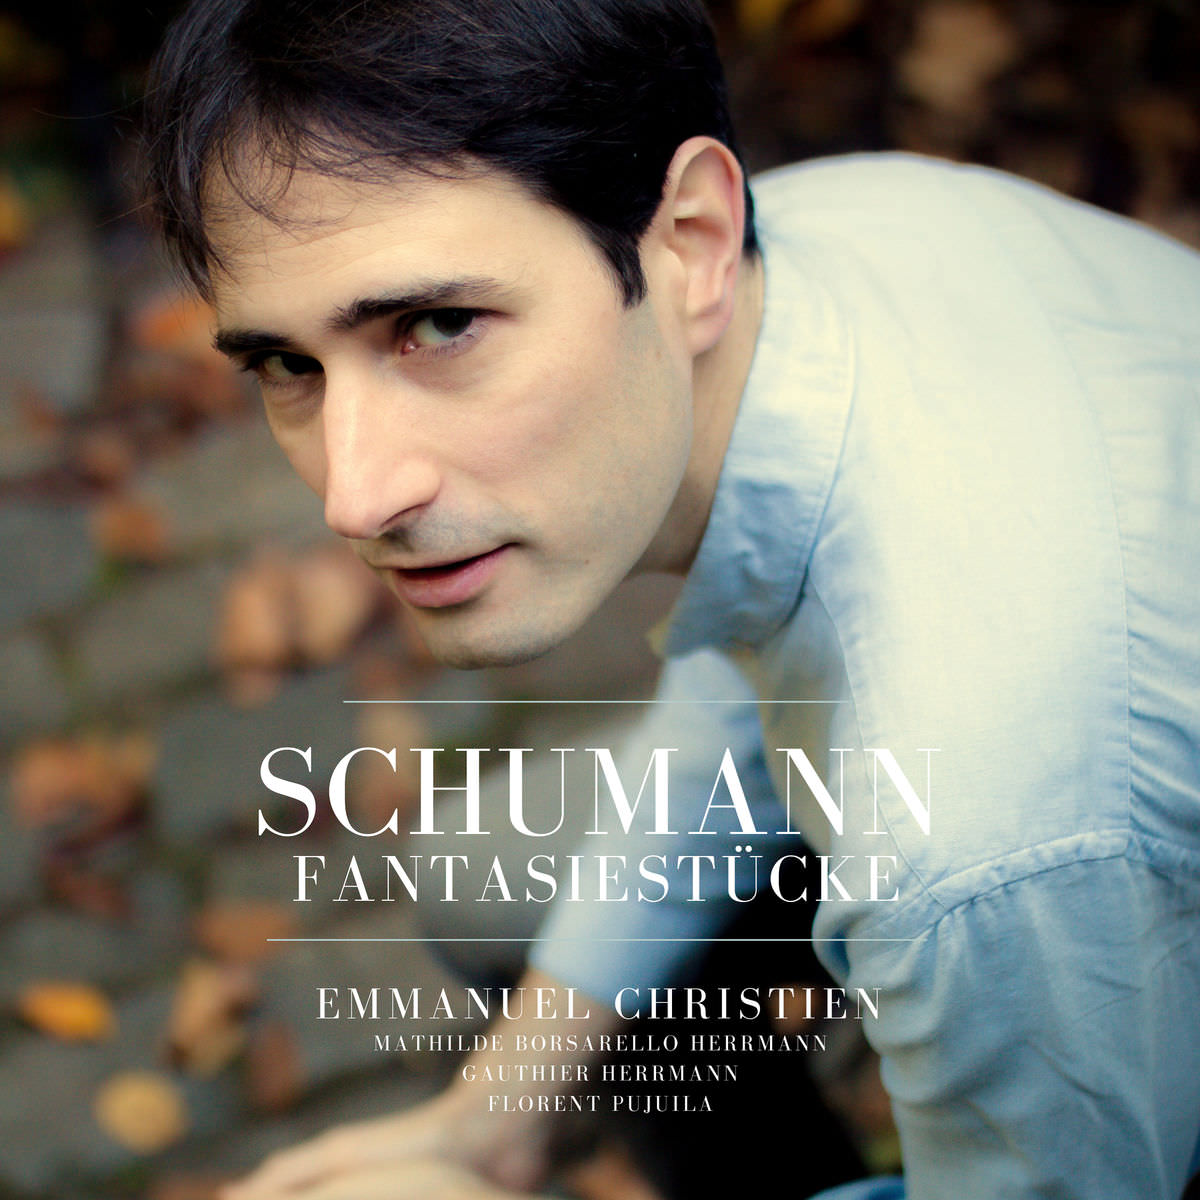 Emmanuel Christien, Florent Pujuila – Schumann: Fantaisiestucke (2018) [FLAC 24bit/96kHz]